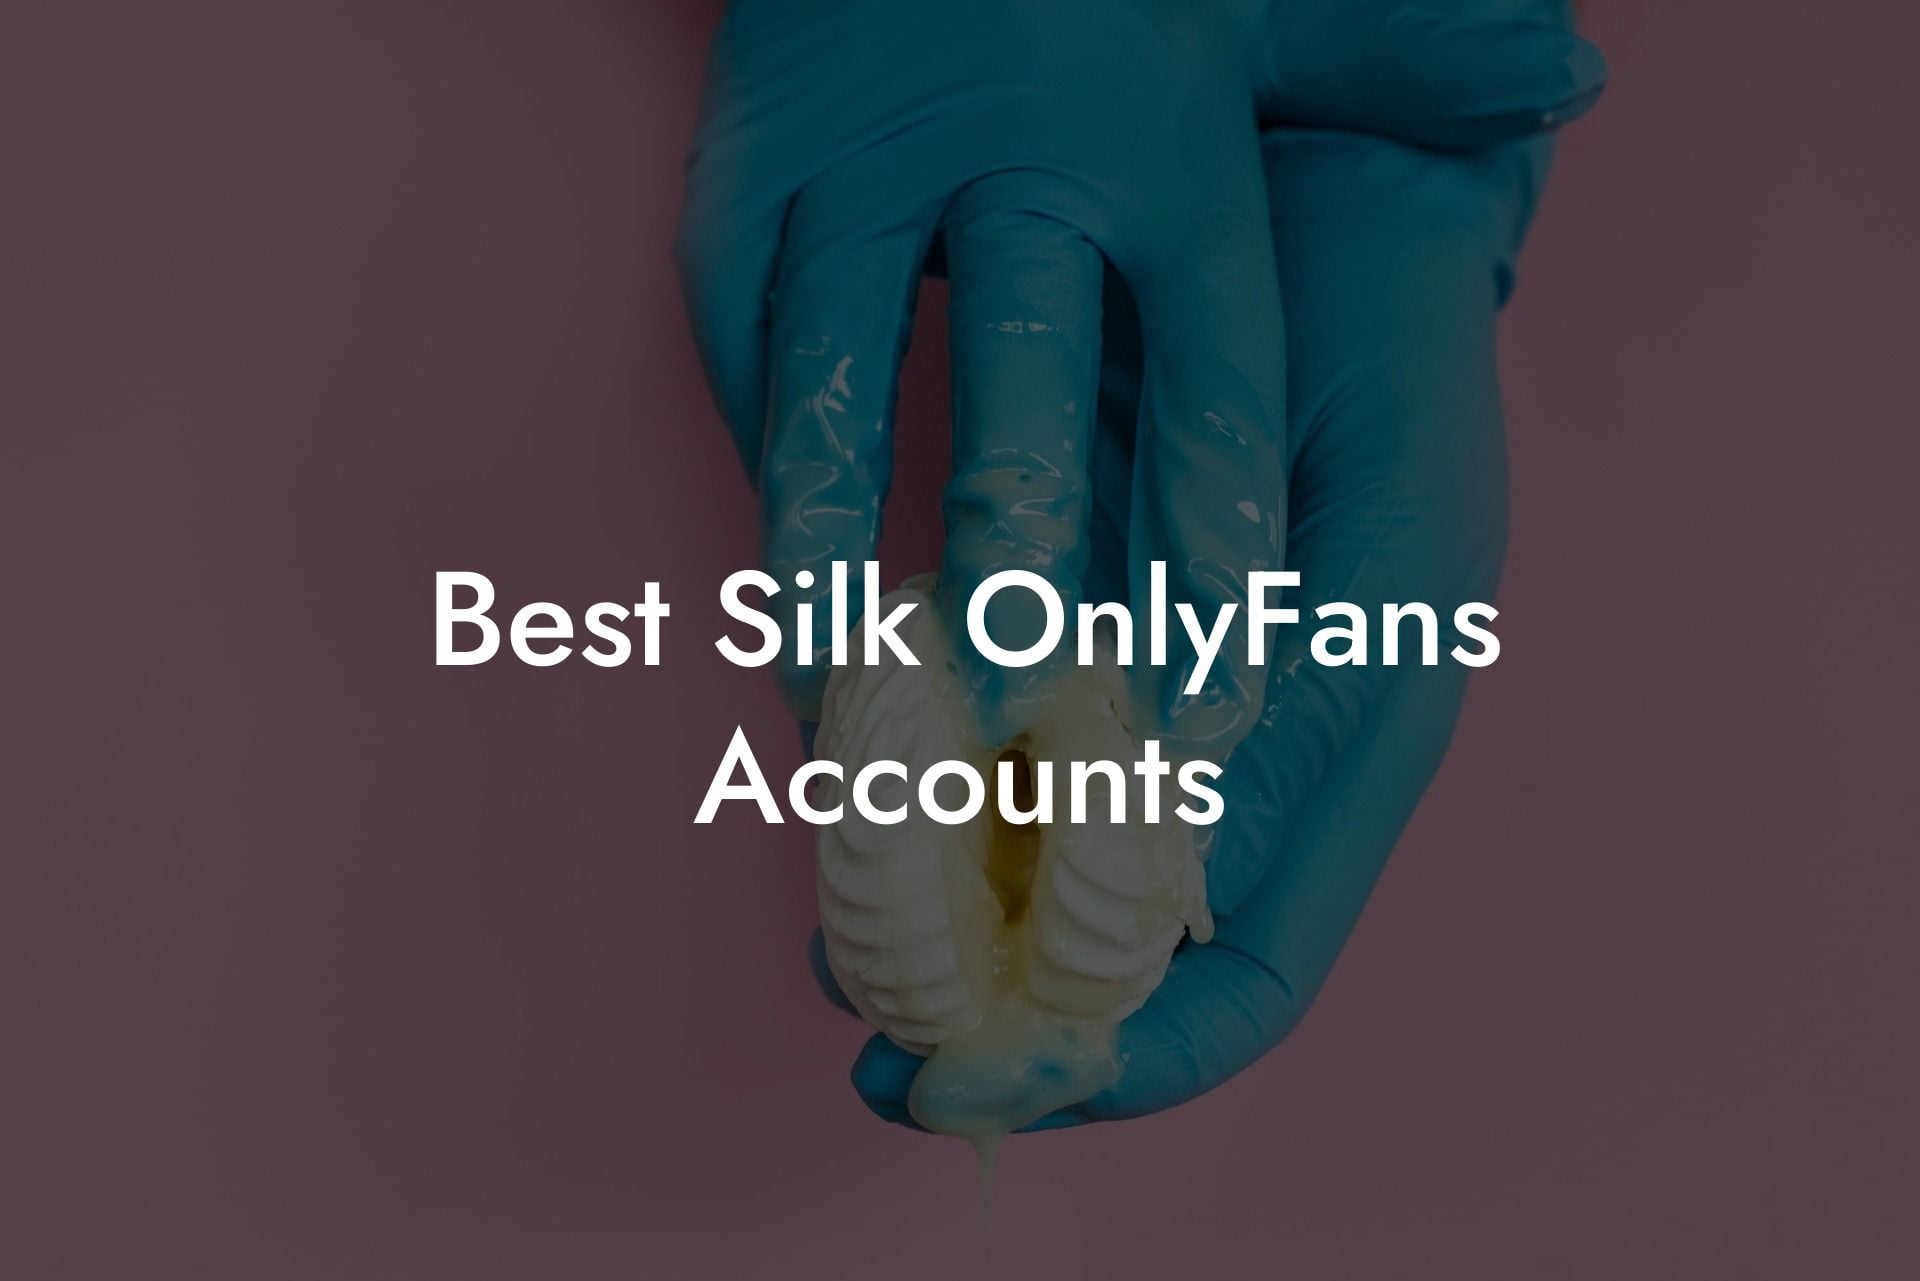 Best Silk OnlyFans Accounts